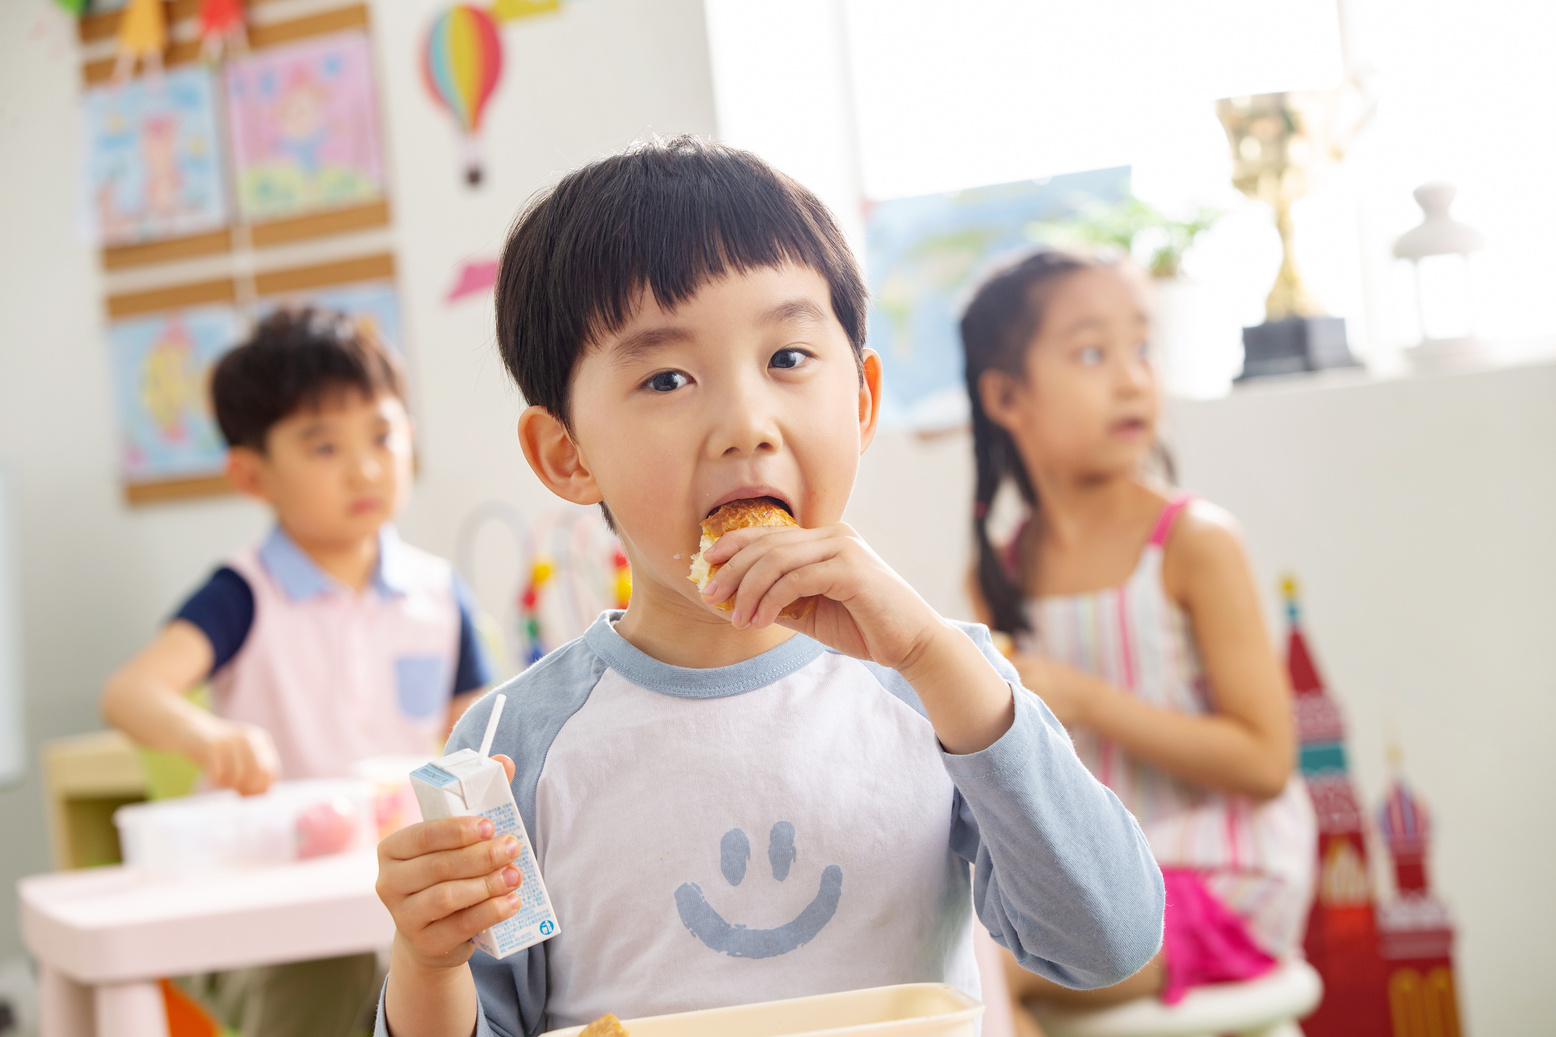 Kindergarten children eat